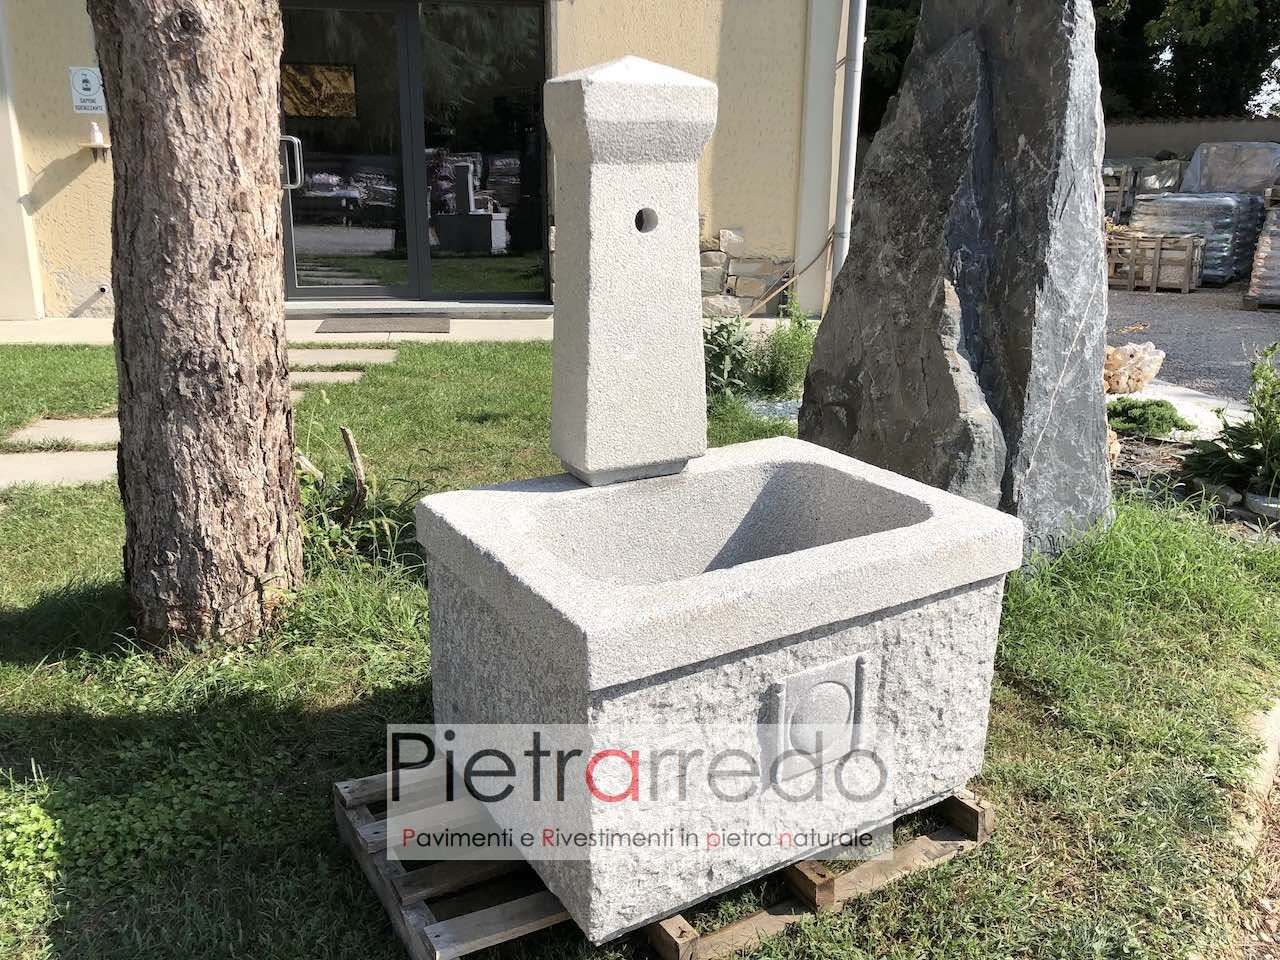 offerta e costo fontana roma pietrarredo 80x60 cm prezzo per giardini verdi stone garden granito